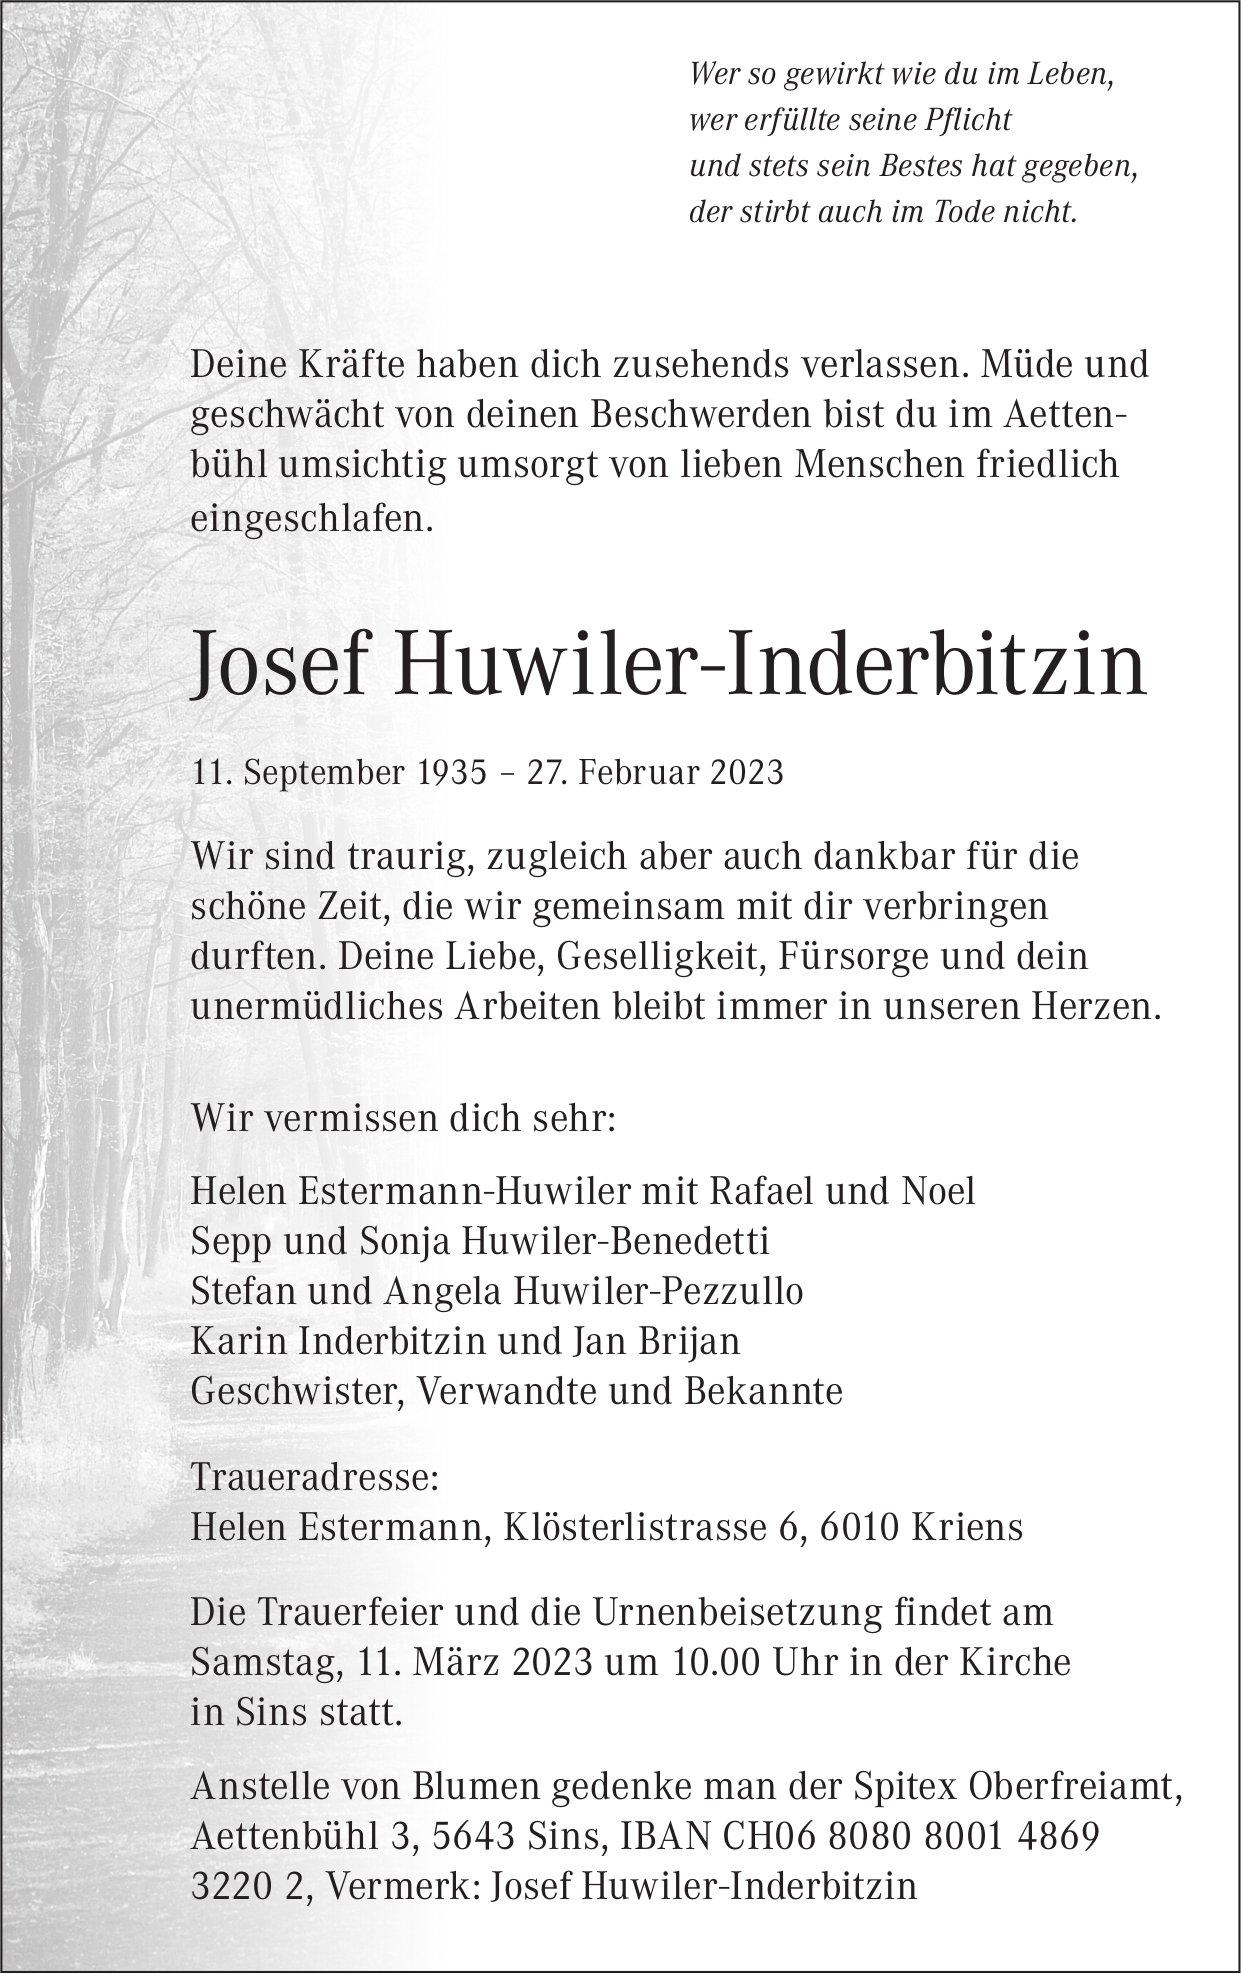 Huwiler-Inderbitzin Josef, Februar 2023 / TA